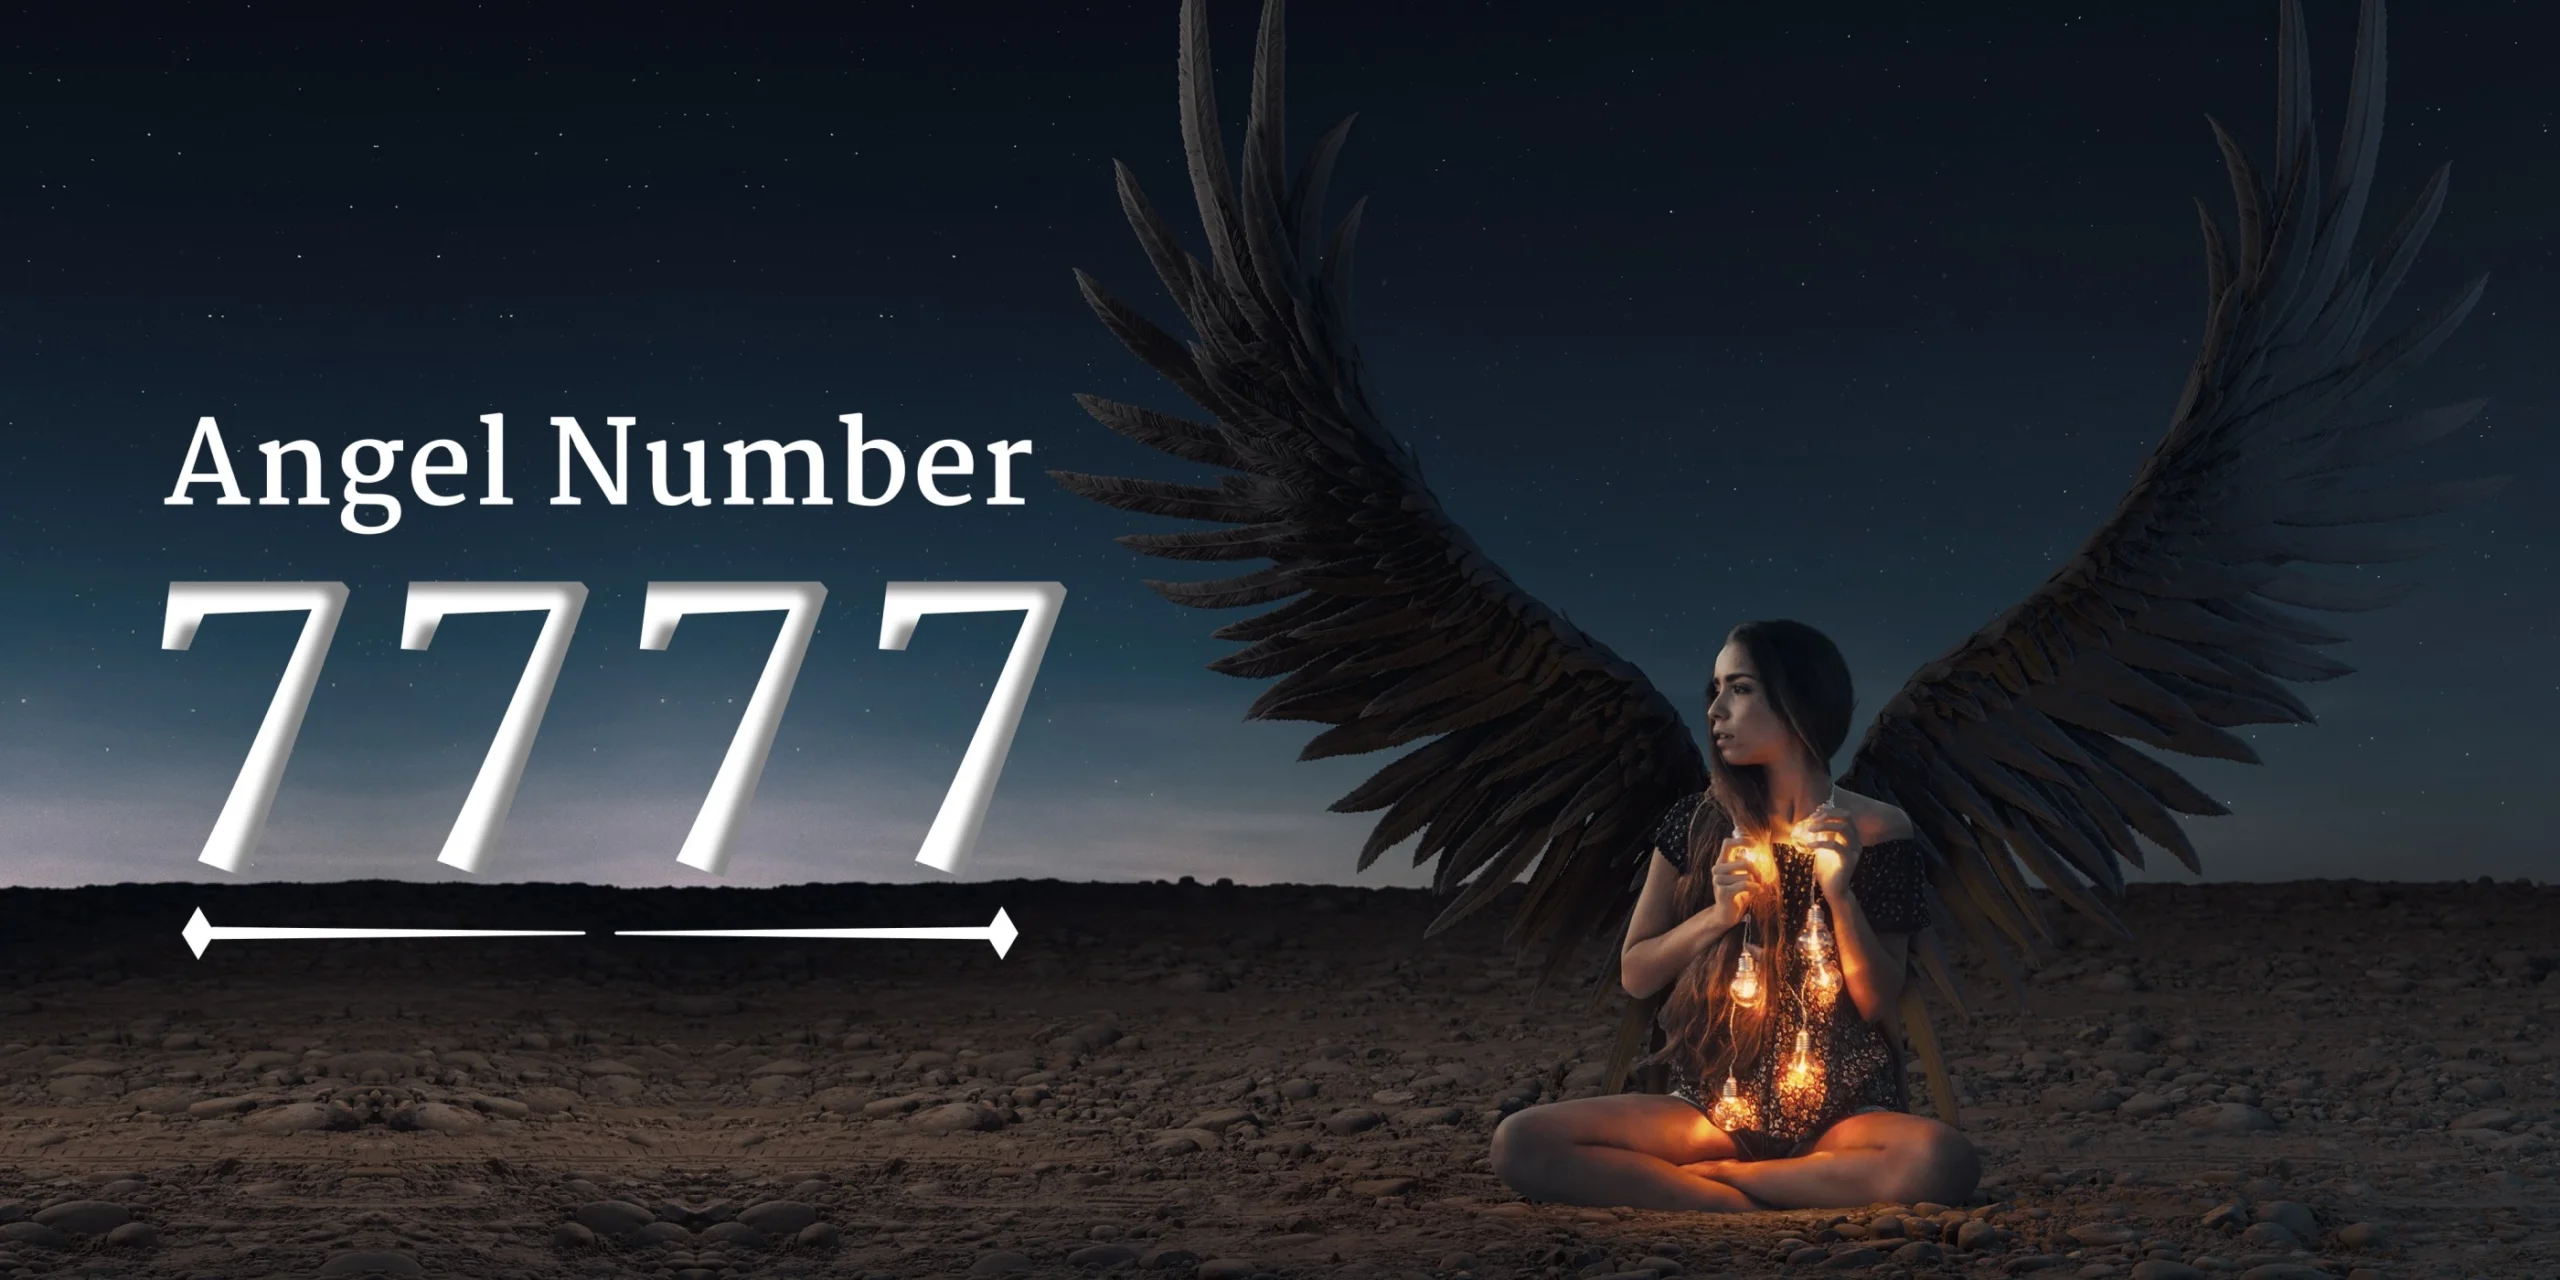 angel number 7777 menaing